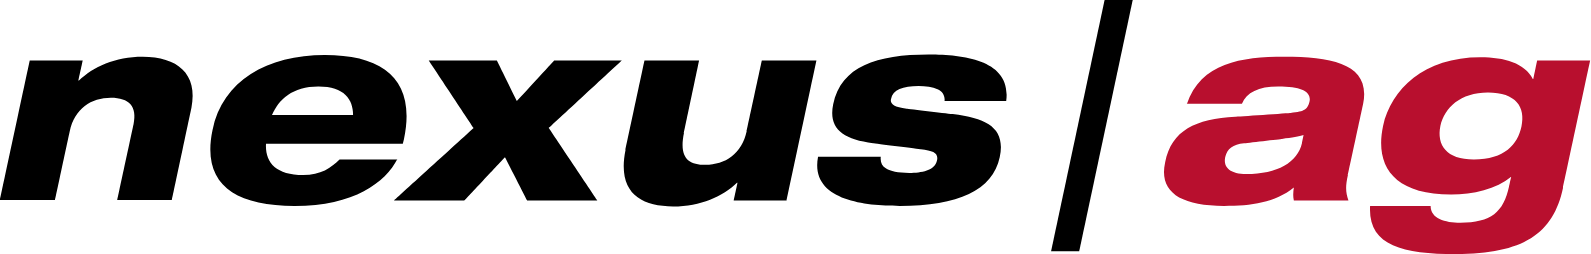 Nexus AG logo (transparent PNG)